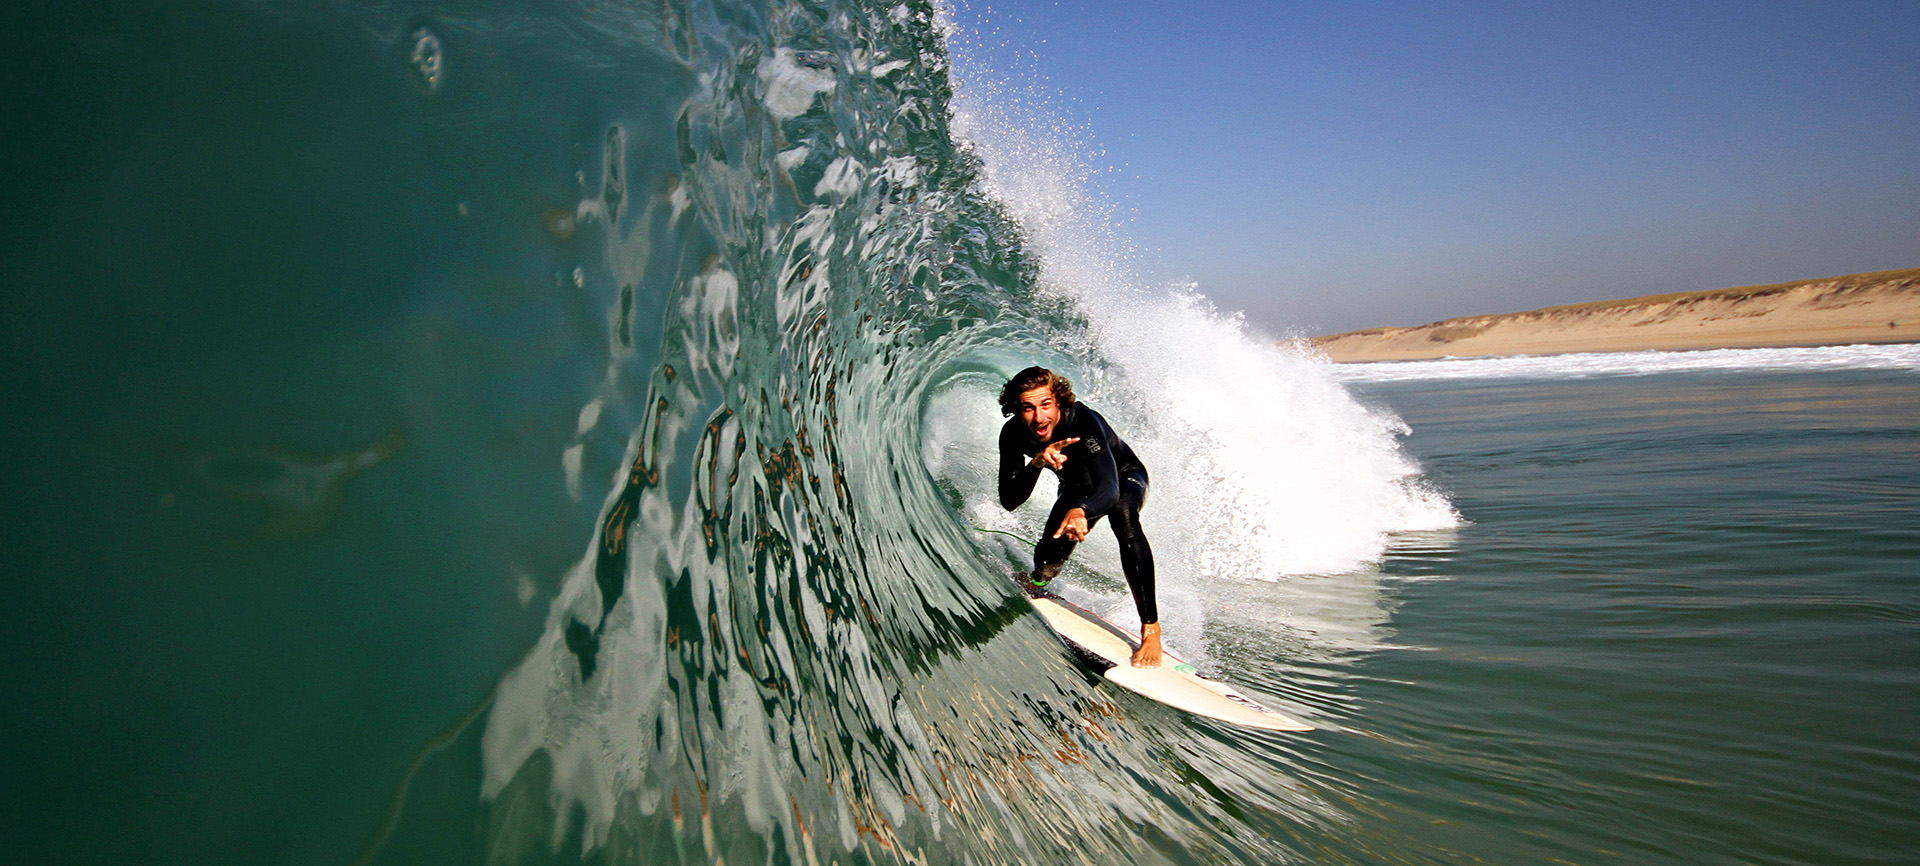 photographe sport bordeaux surf clement philippon